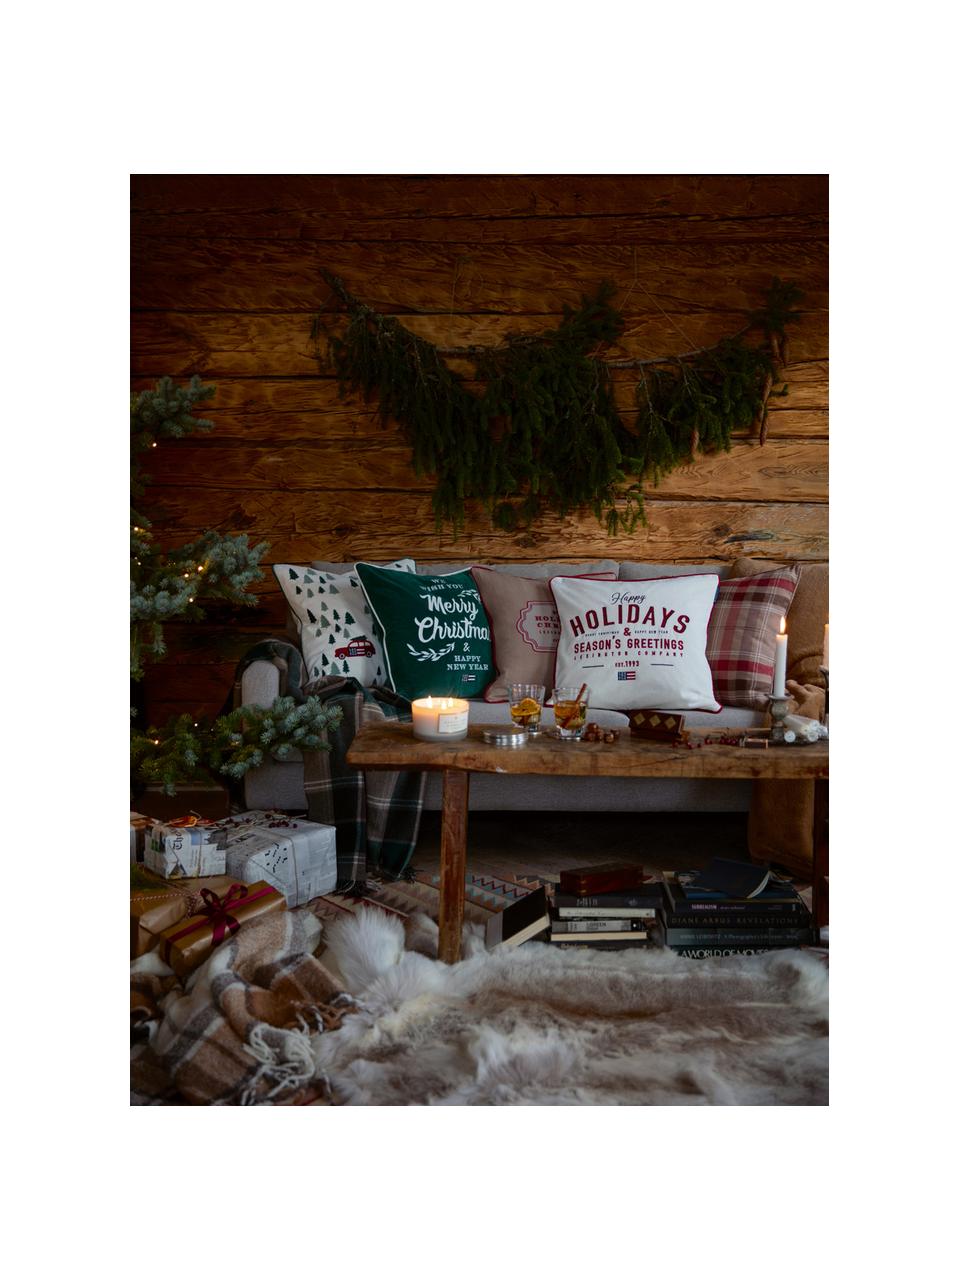 Poszewka na poduszkę z aksamitu Happy Holidays, Aksamit bawełniany, Biały, czerwony, S 50 x D 50 cm